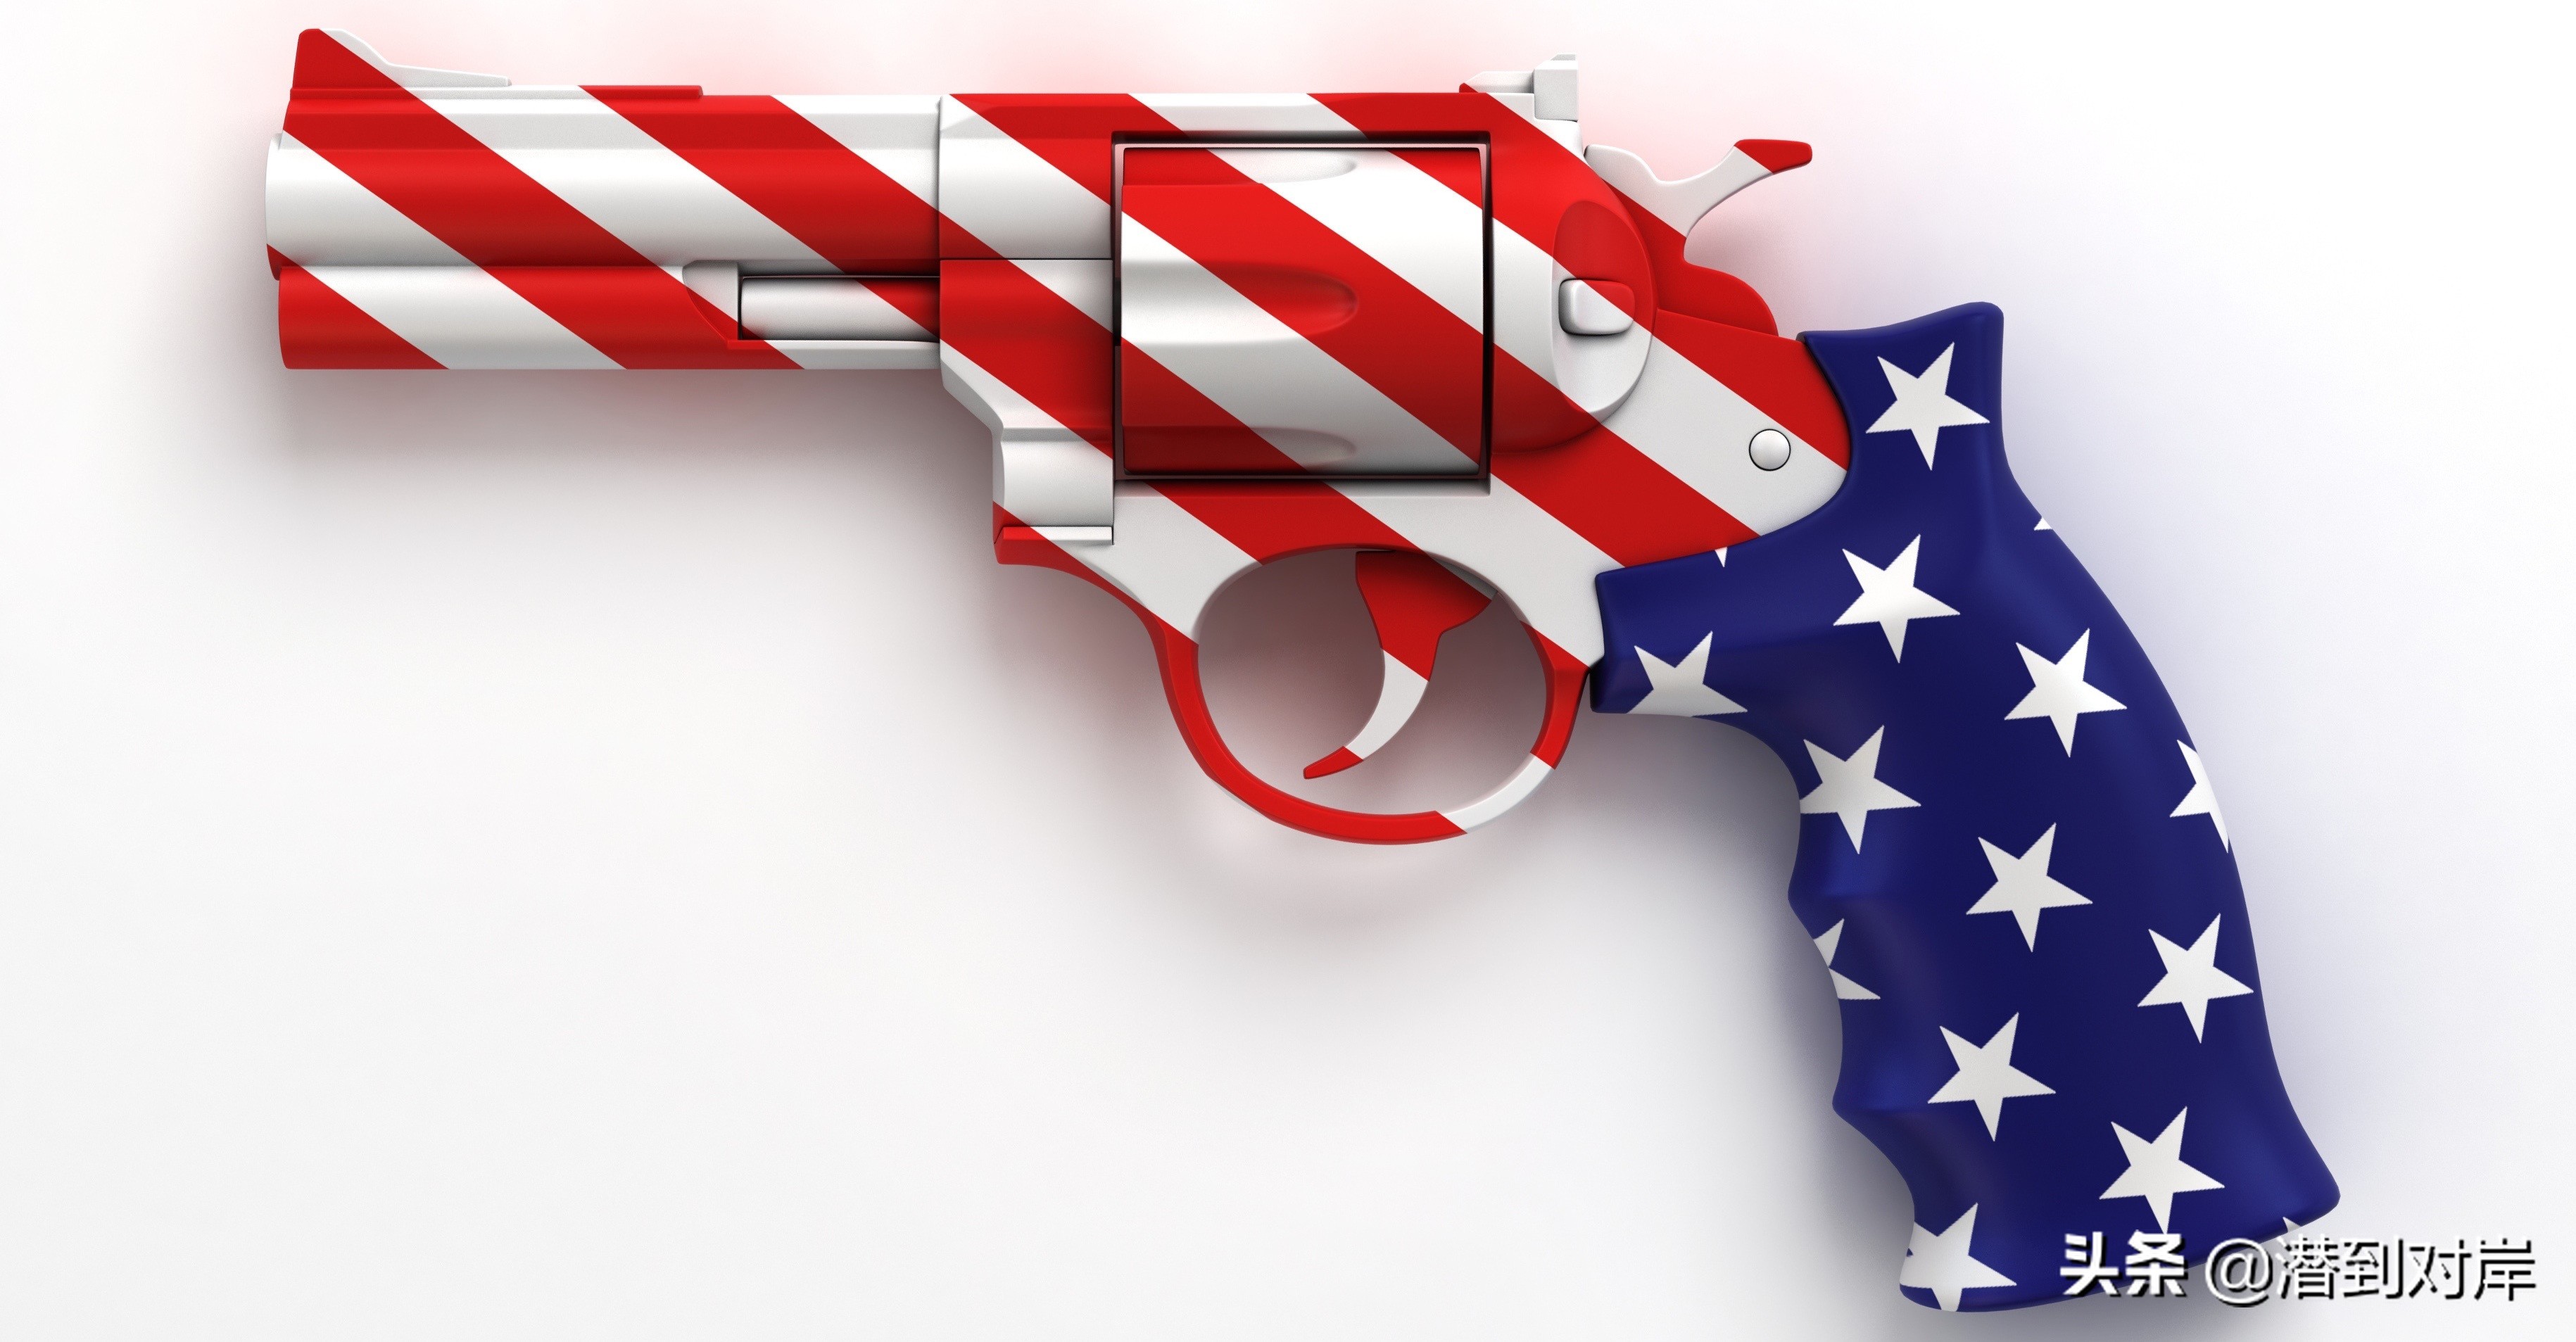 看看美国涉枪的伤亡数据，您觉得允许持枪利大还是弊大？